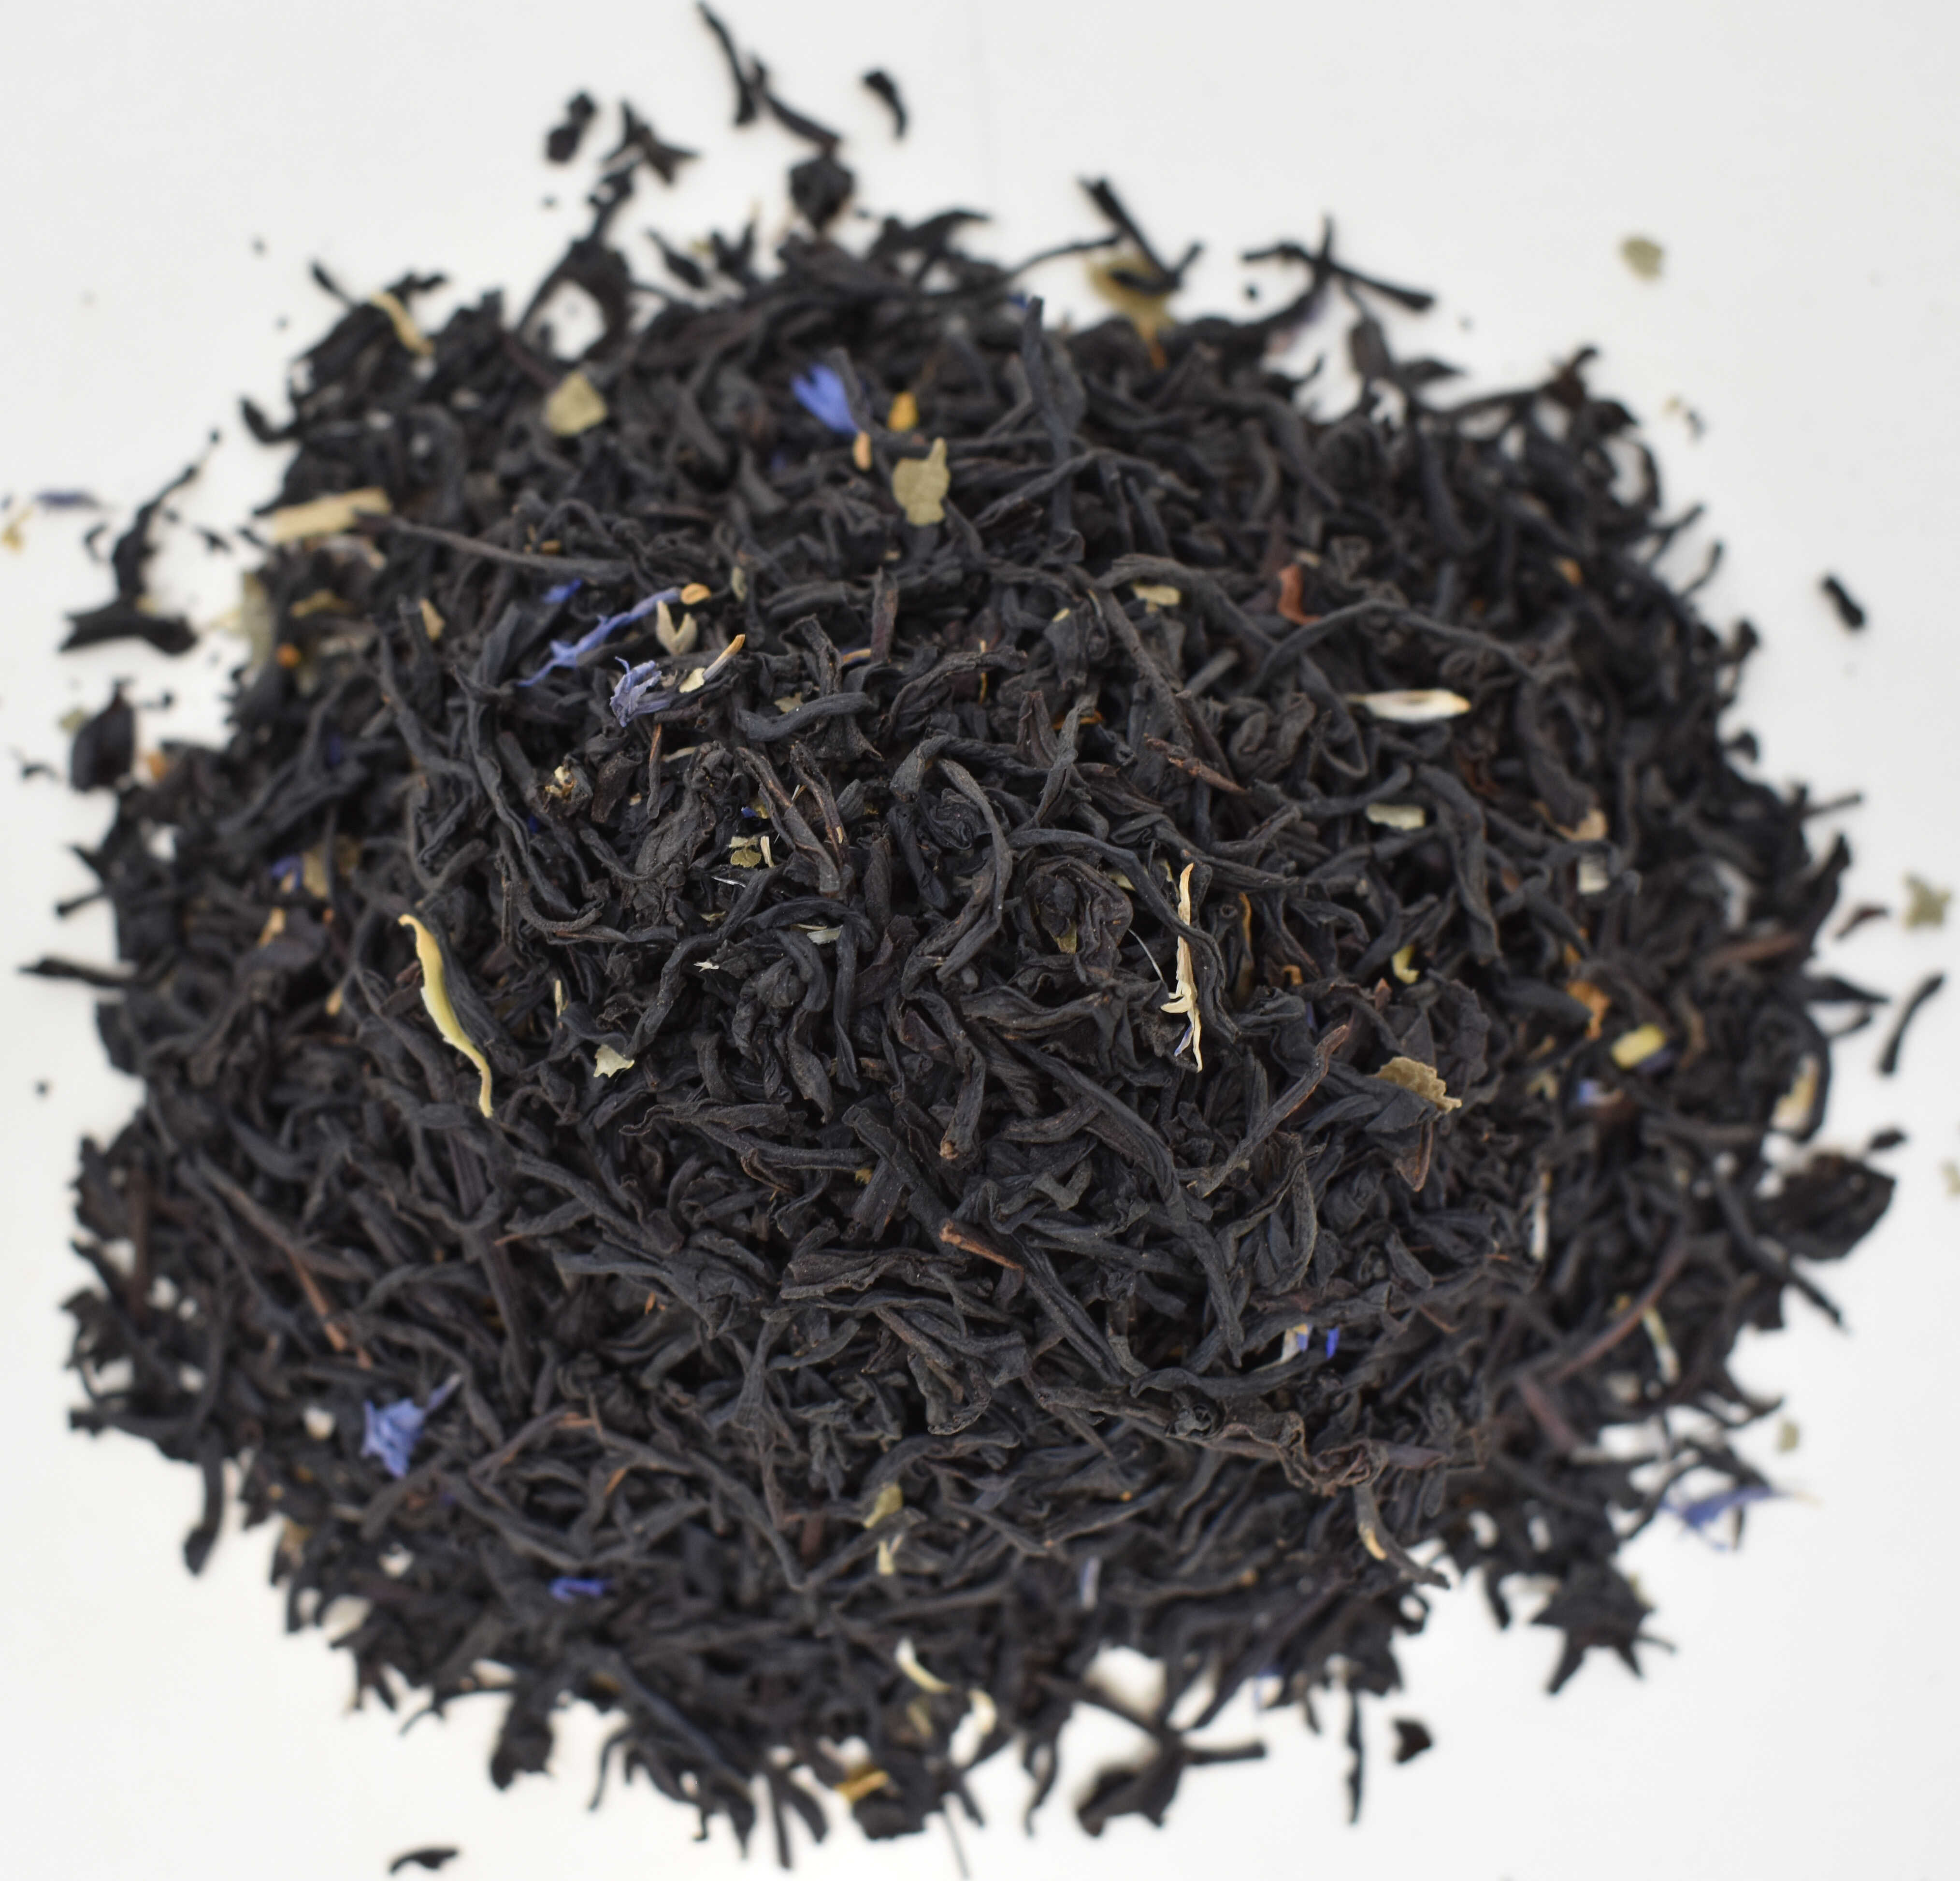 Black Currant Black Tea - Top Photo